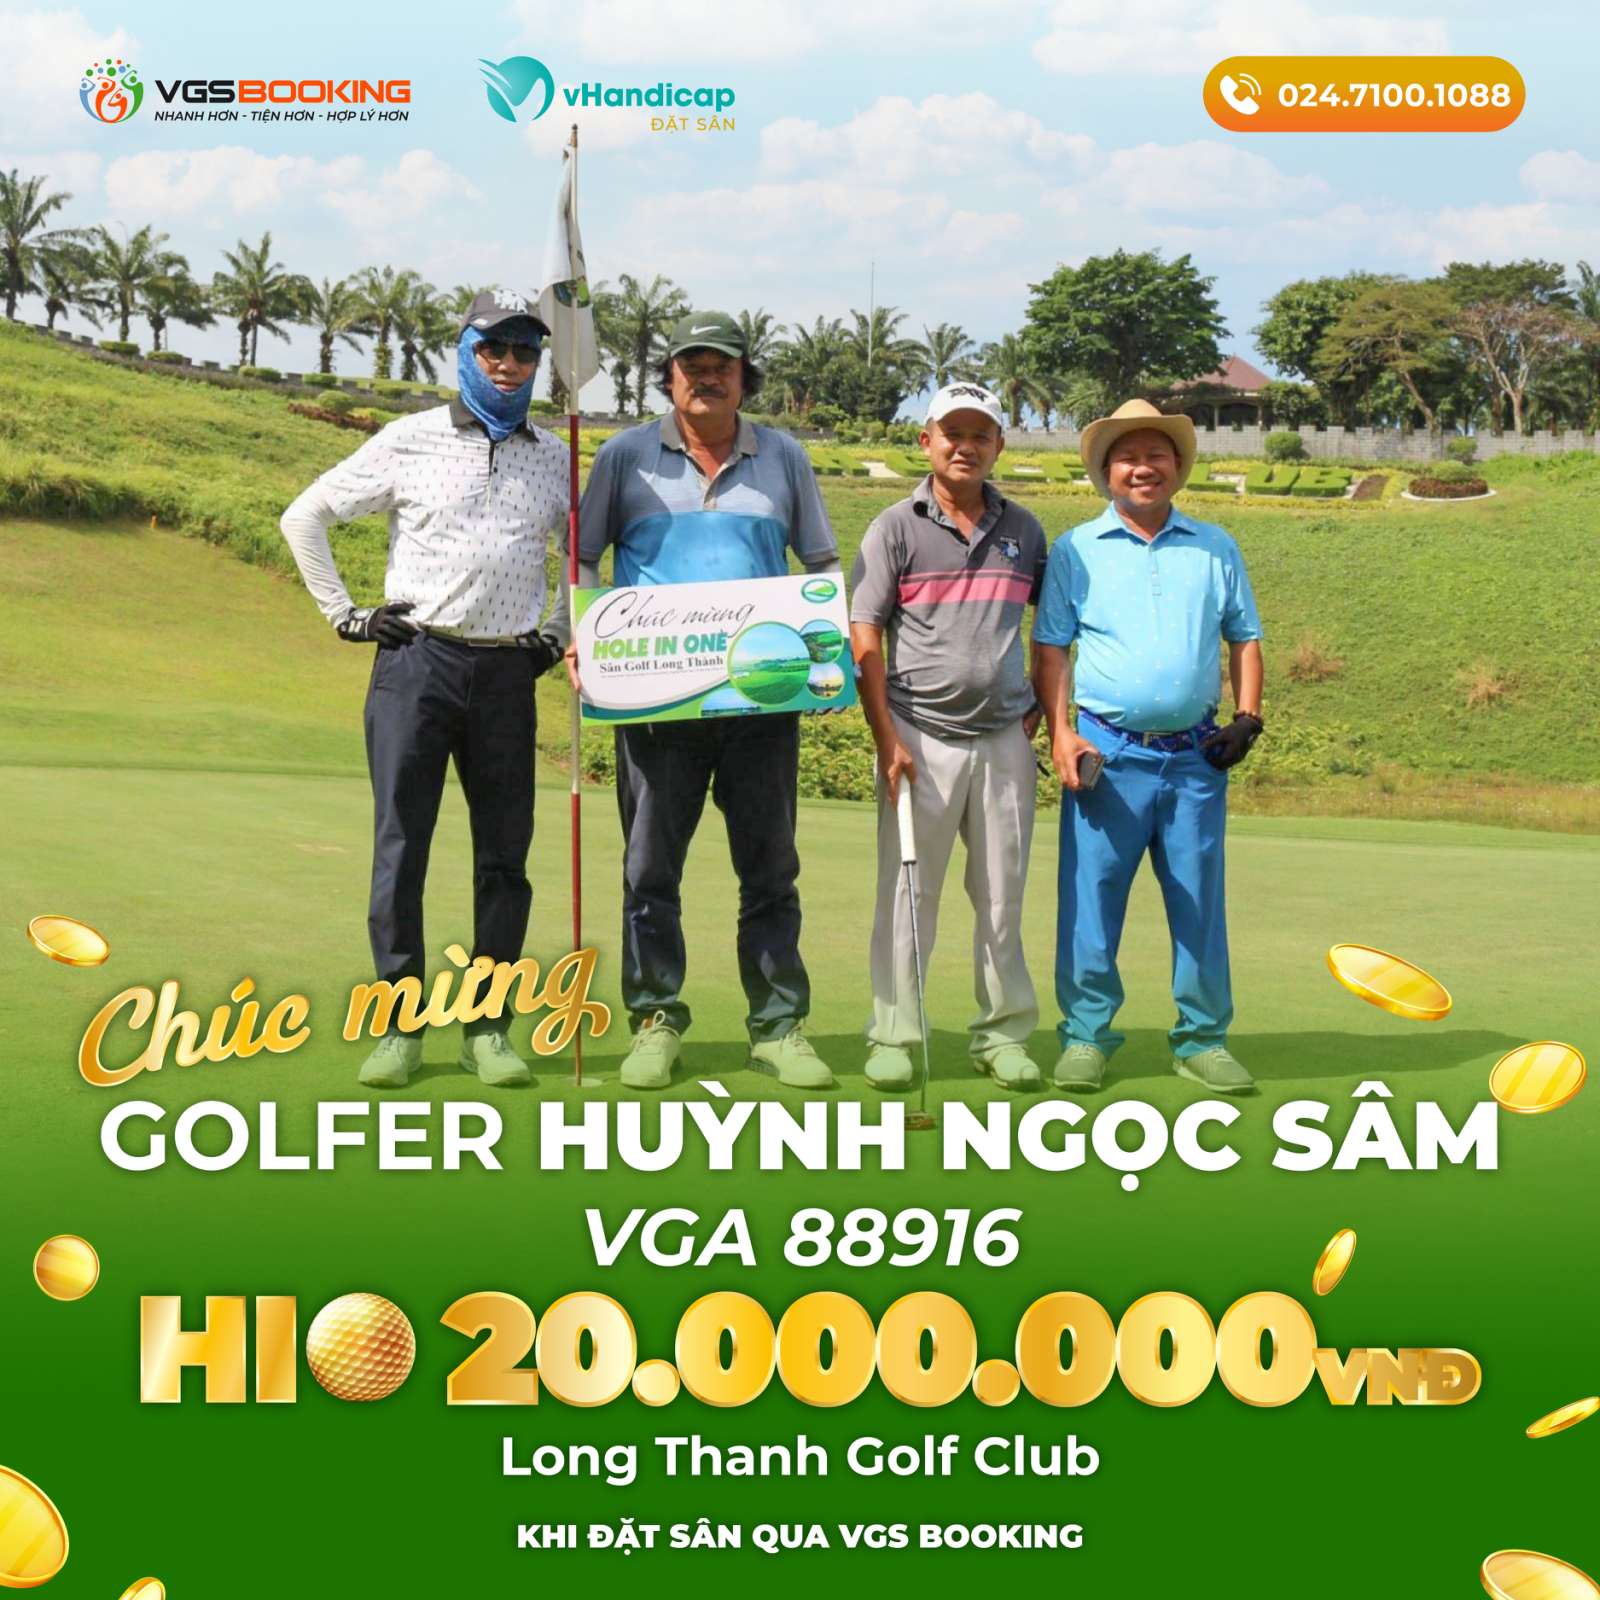 Đặt sân qua VGS Booking, golfer Huỳnh Ngọc Sâm được tặng 20 triệu đồng tiền thưởng khi ghi HIO